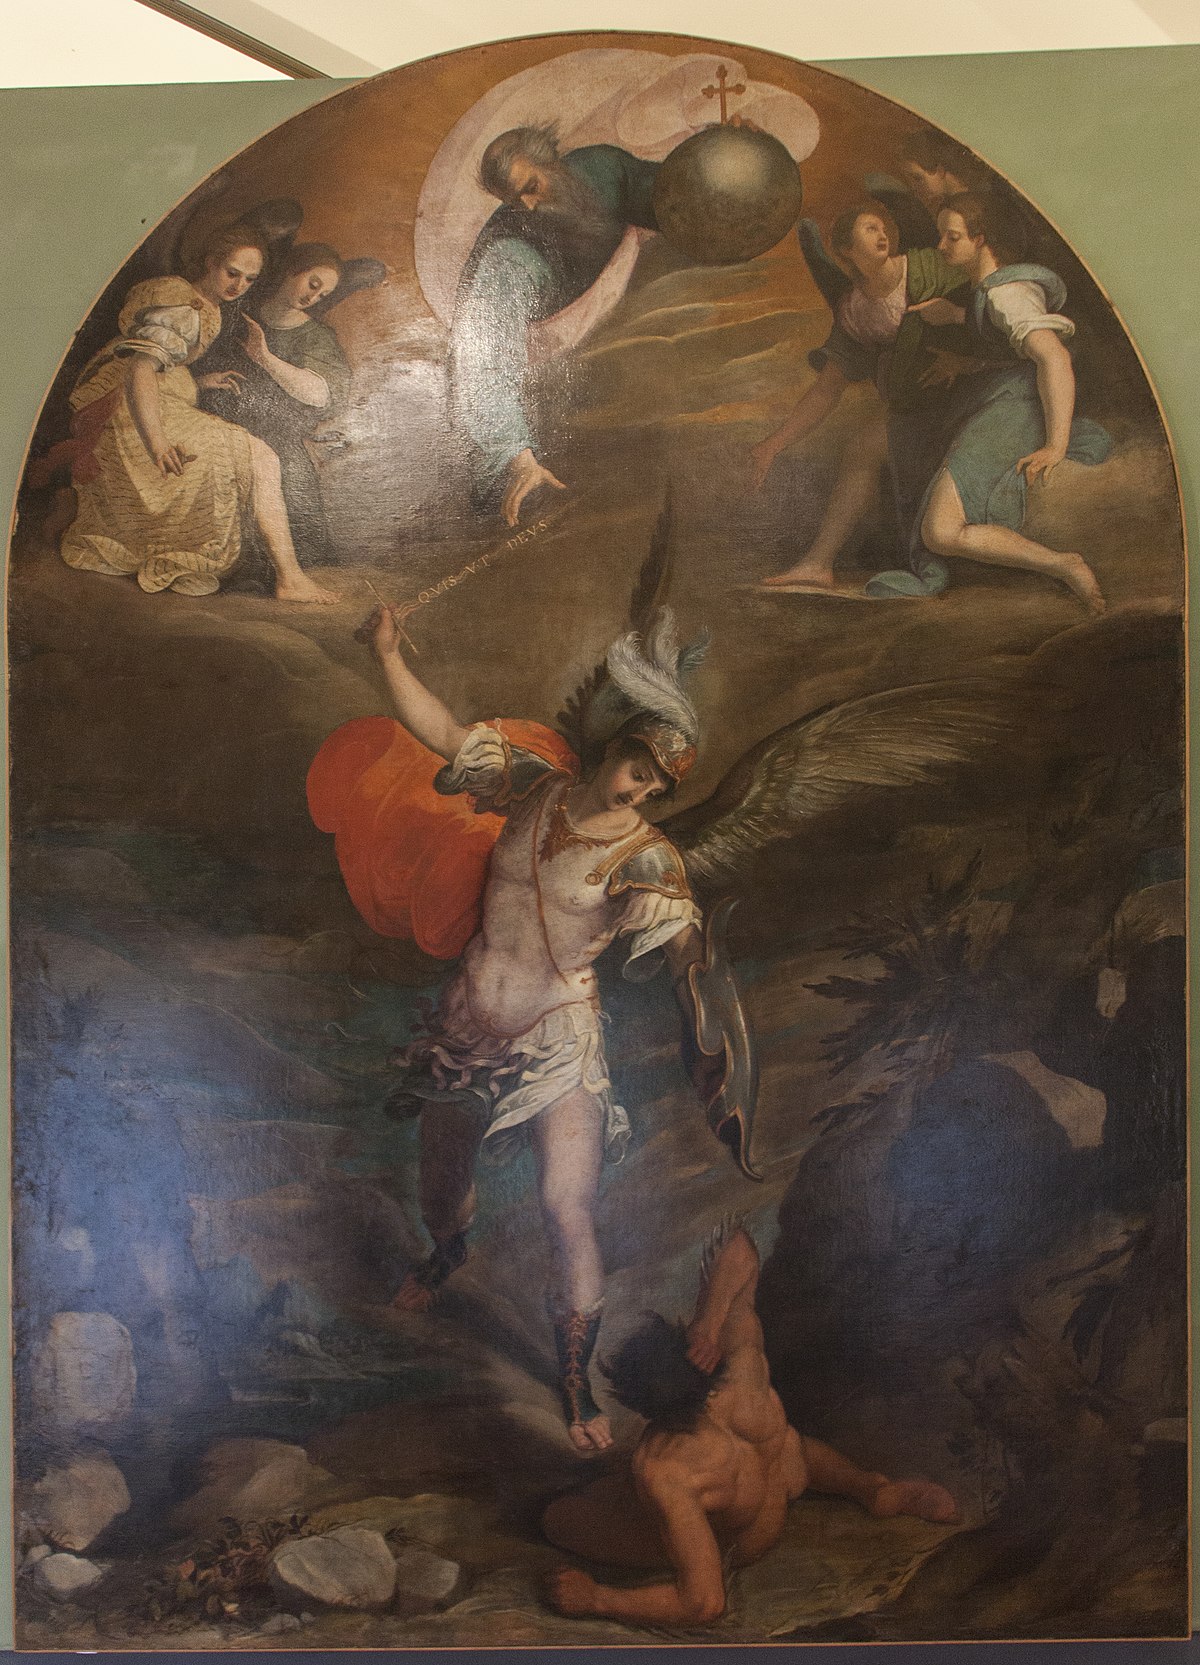 Dipinto San Michele Arcangelo - Emporio delle Passioni